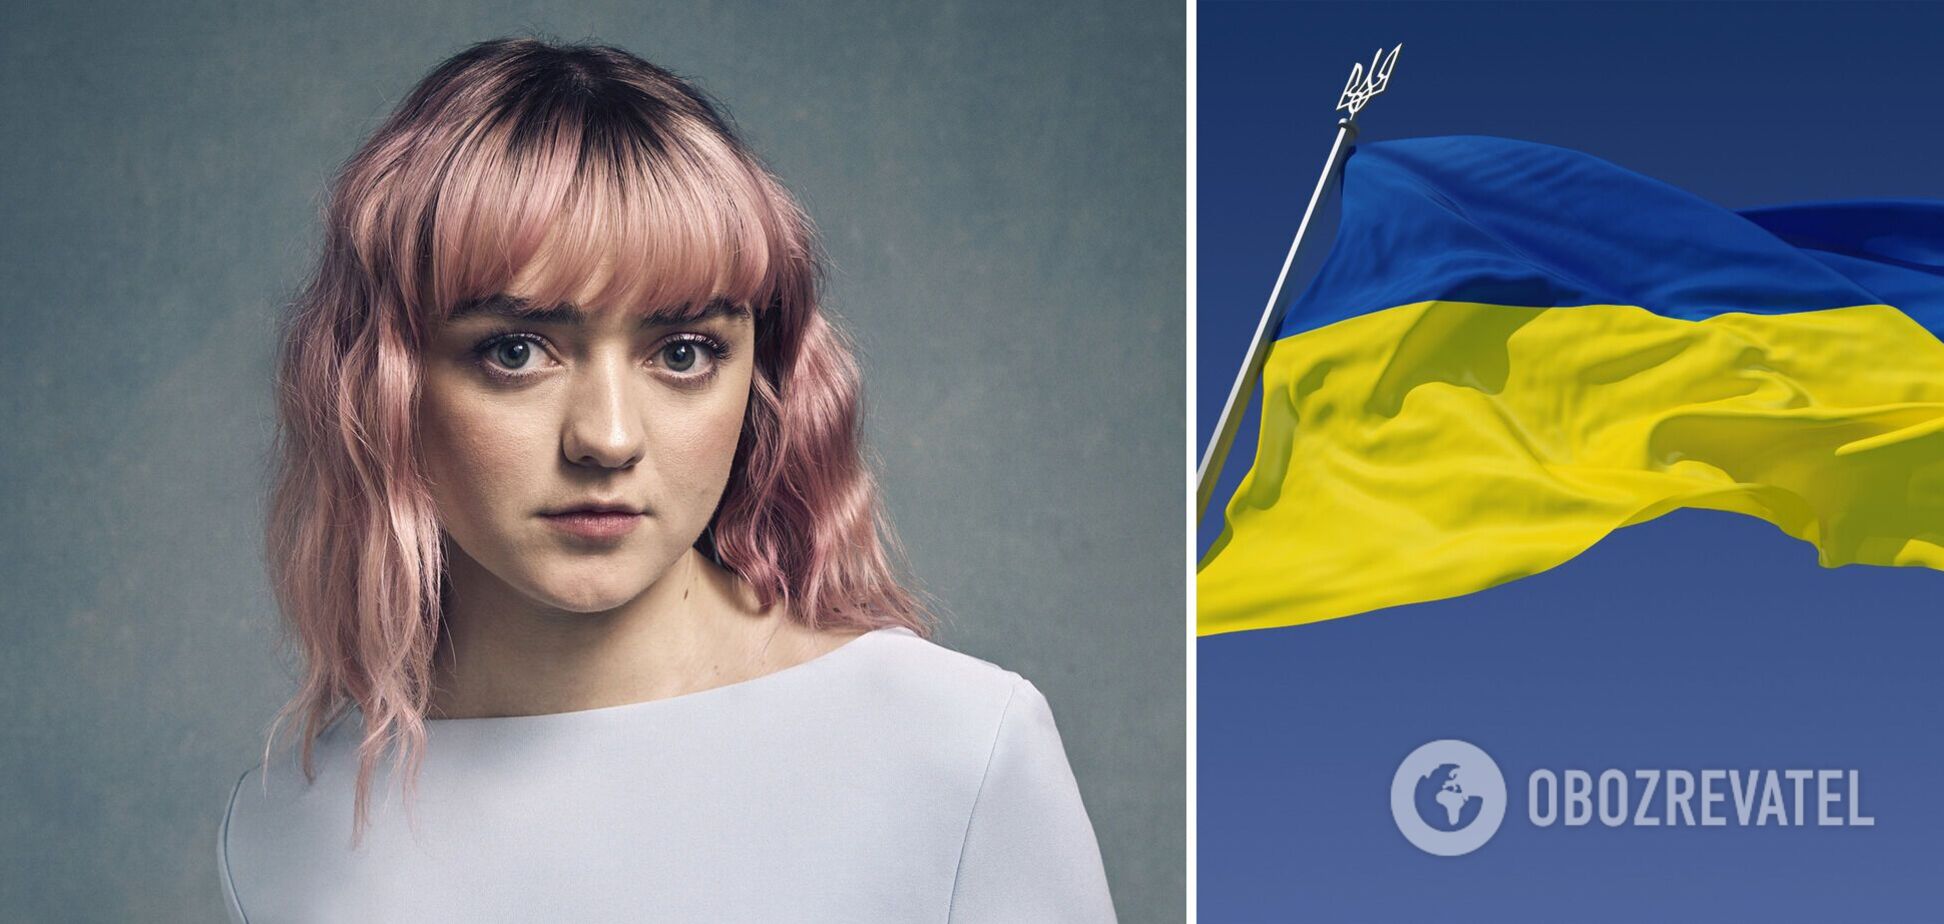 Звезда 'Игры престолов' Мэйси Уильямс посетит концерт в знак солидарности с народом Украины